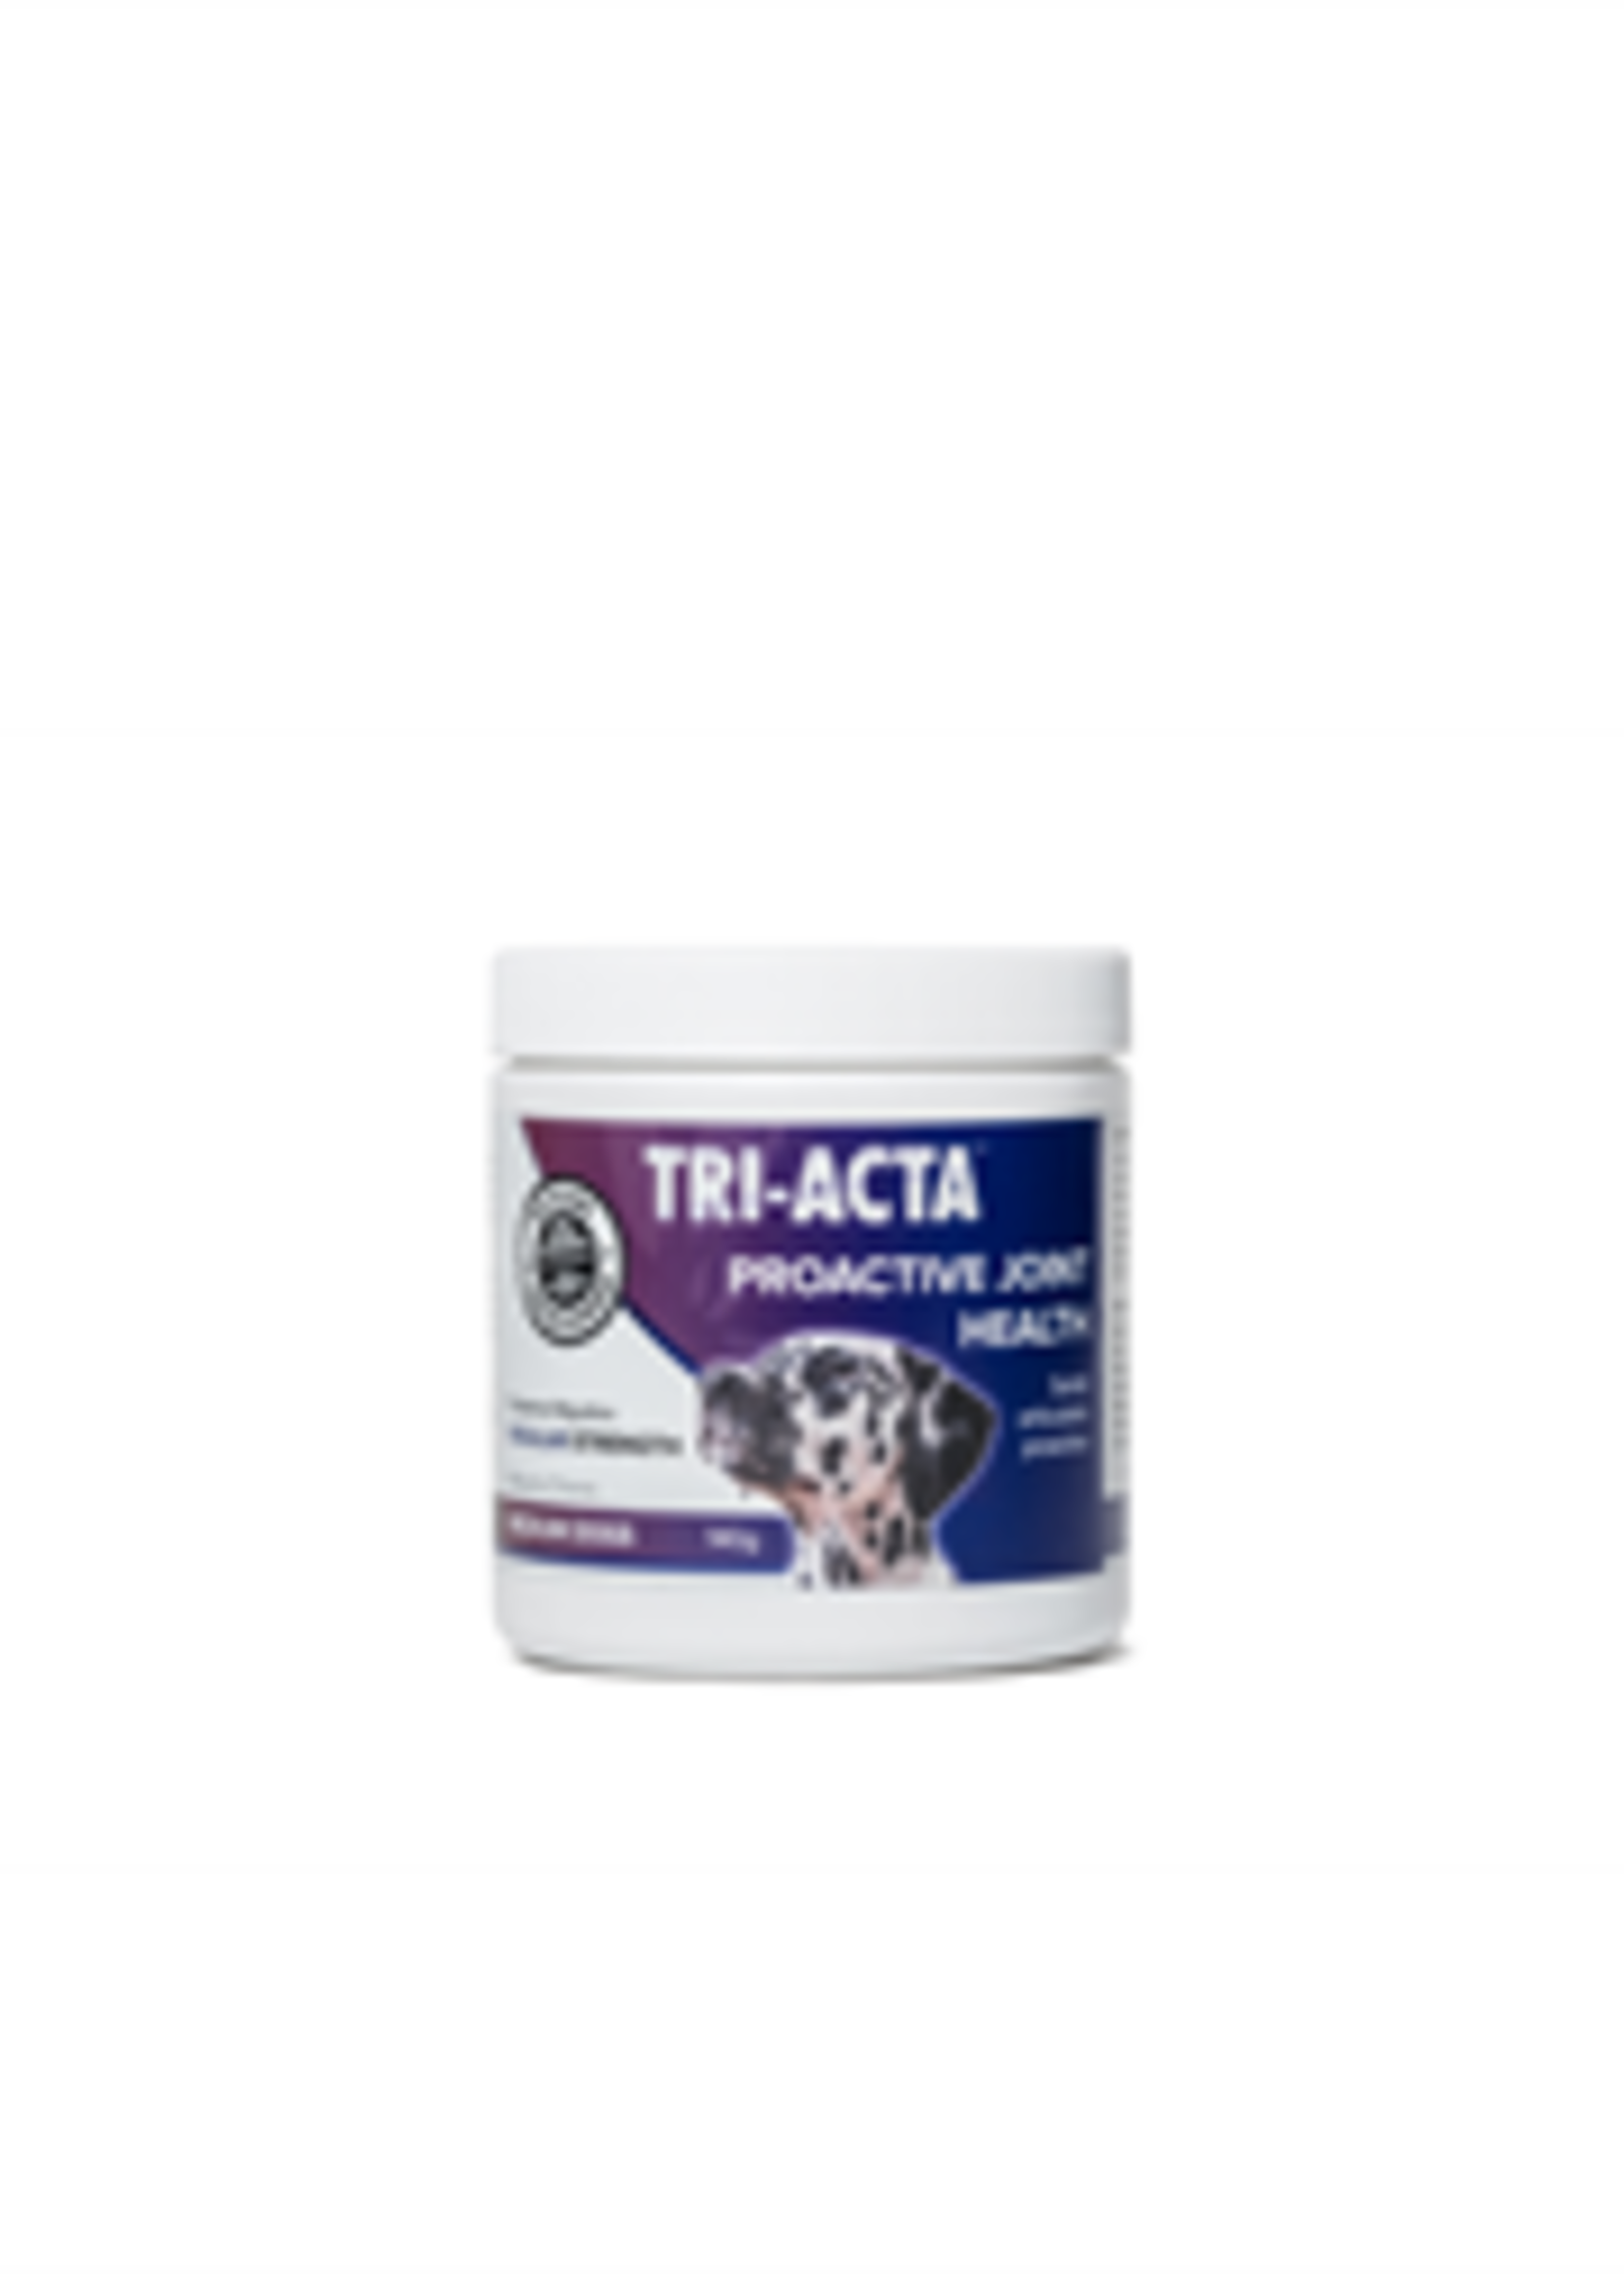 Integricare Tri-Acta™ 140g